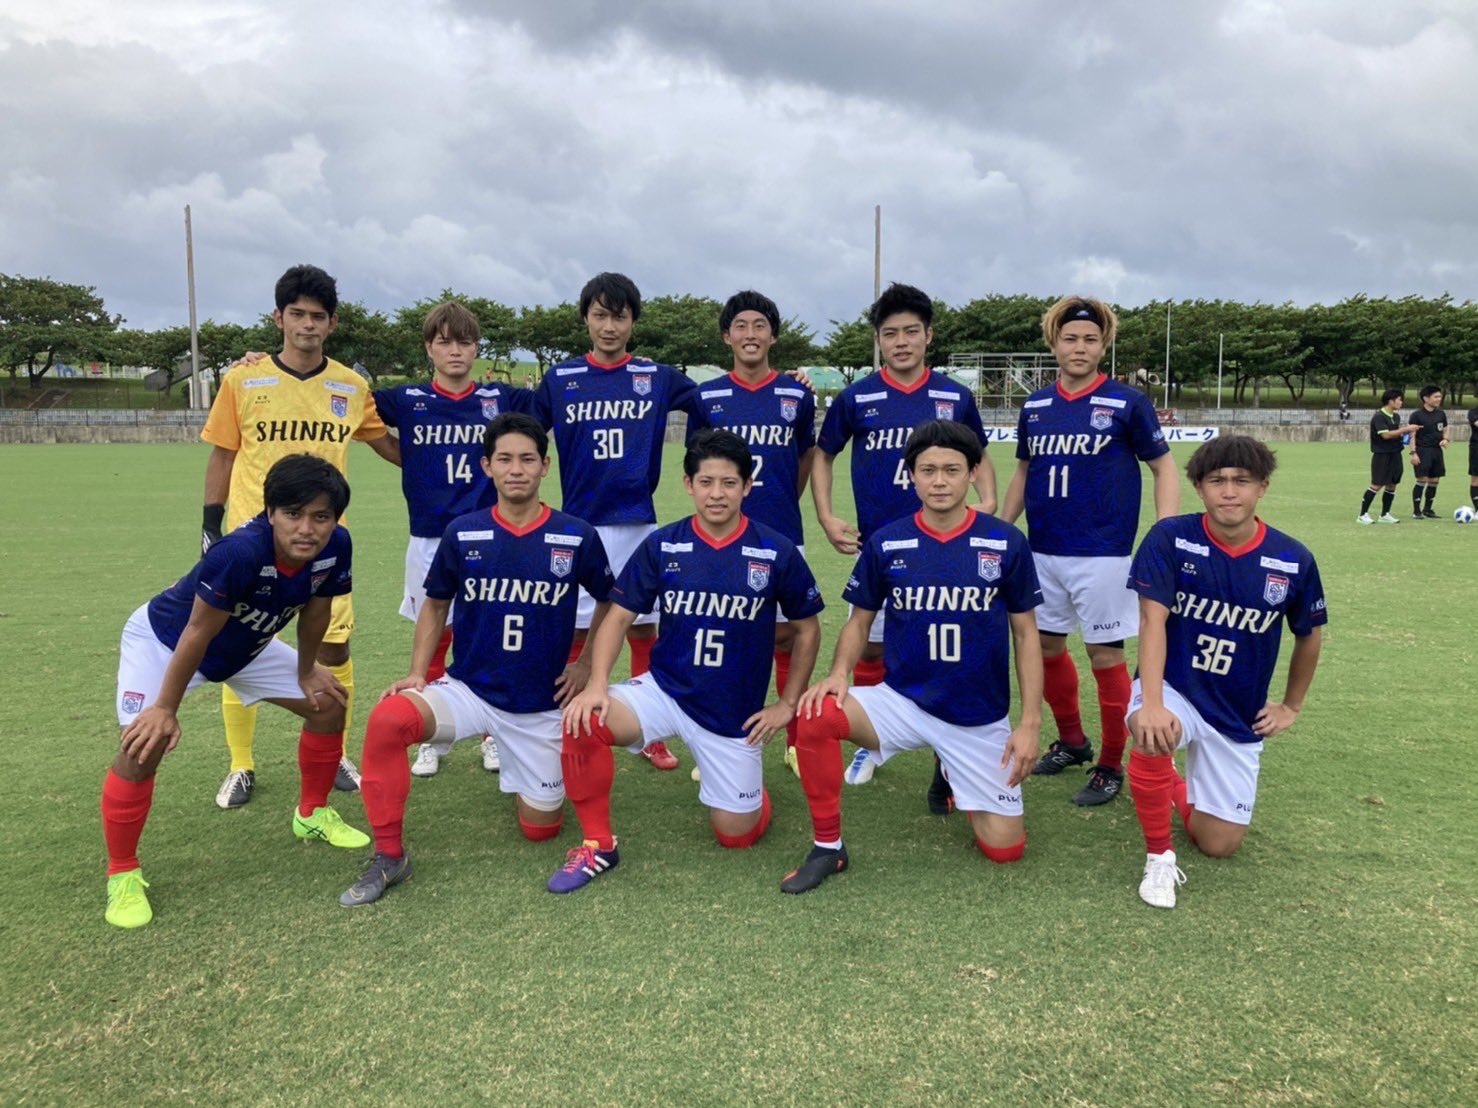 セリオーレ沖縄スポーツクラブ Serioleokinawa Twitter